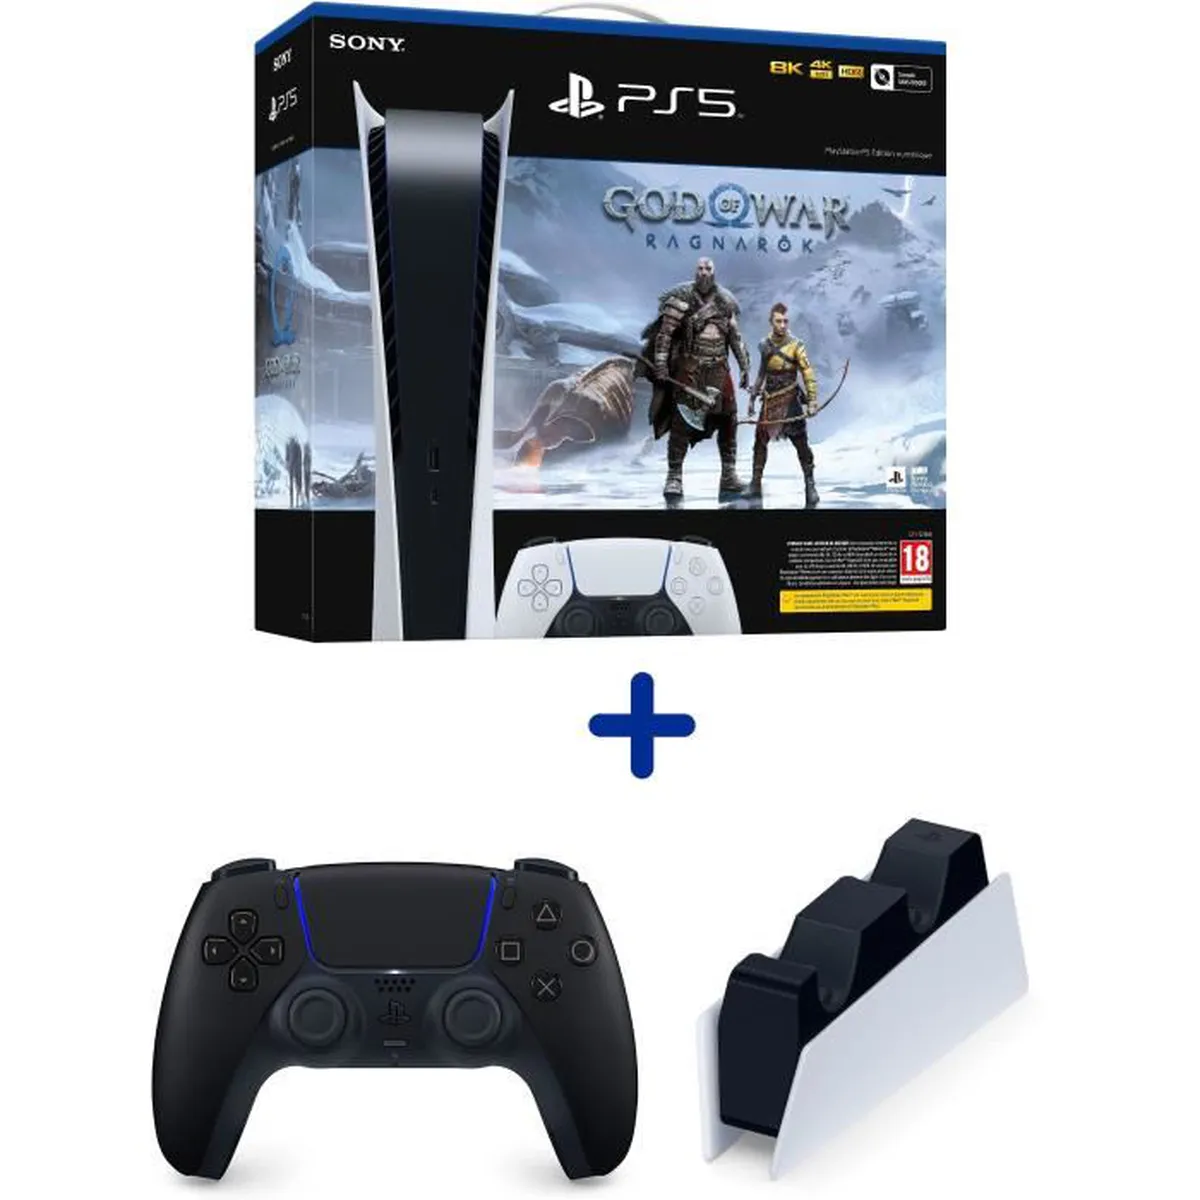 Pack PS5 Digital : Console PS5 Digitale + God of War : Ragnarök + Manette DualSense Noire + Station de Charge pour DualSense